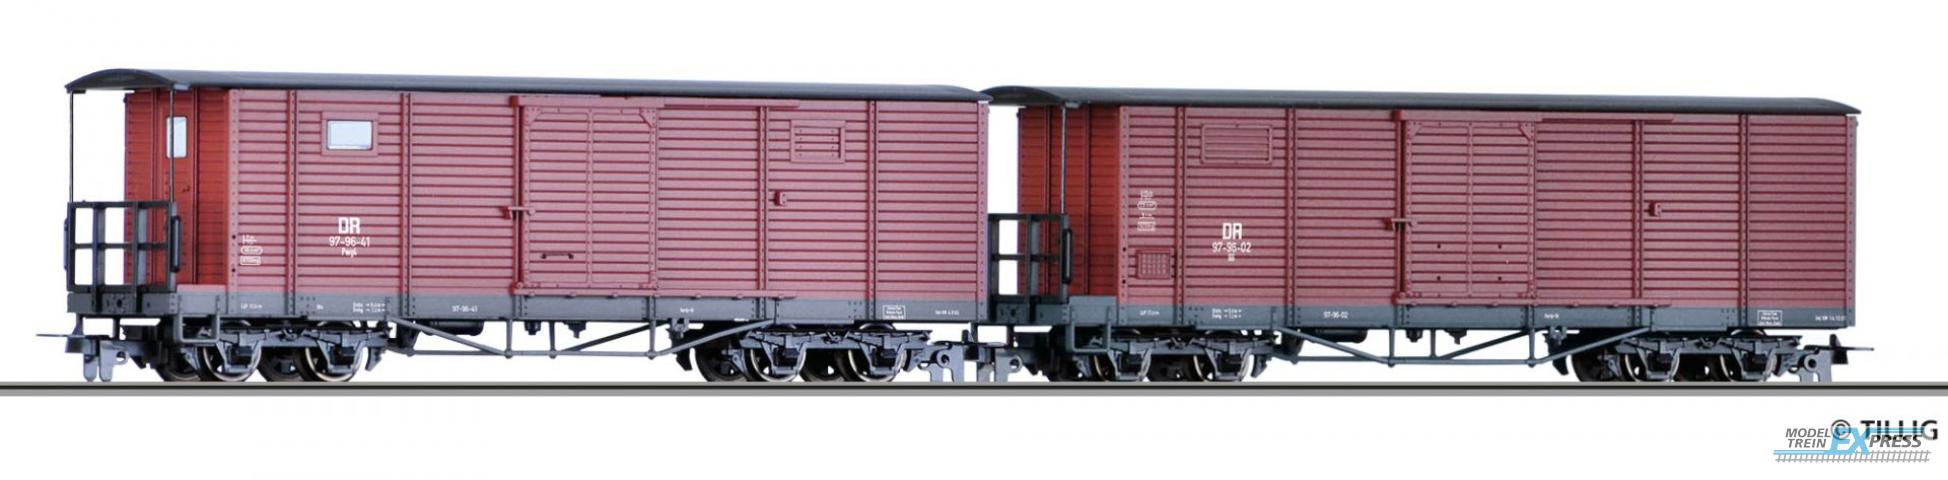 Tillig 5940 Güterwagenset der DR, bestehend aus zwei unterschiedlichen gedeckten Güterwagen, Ep. III